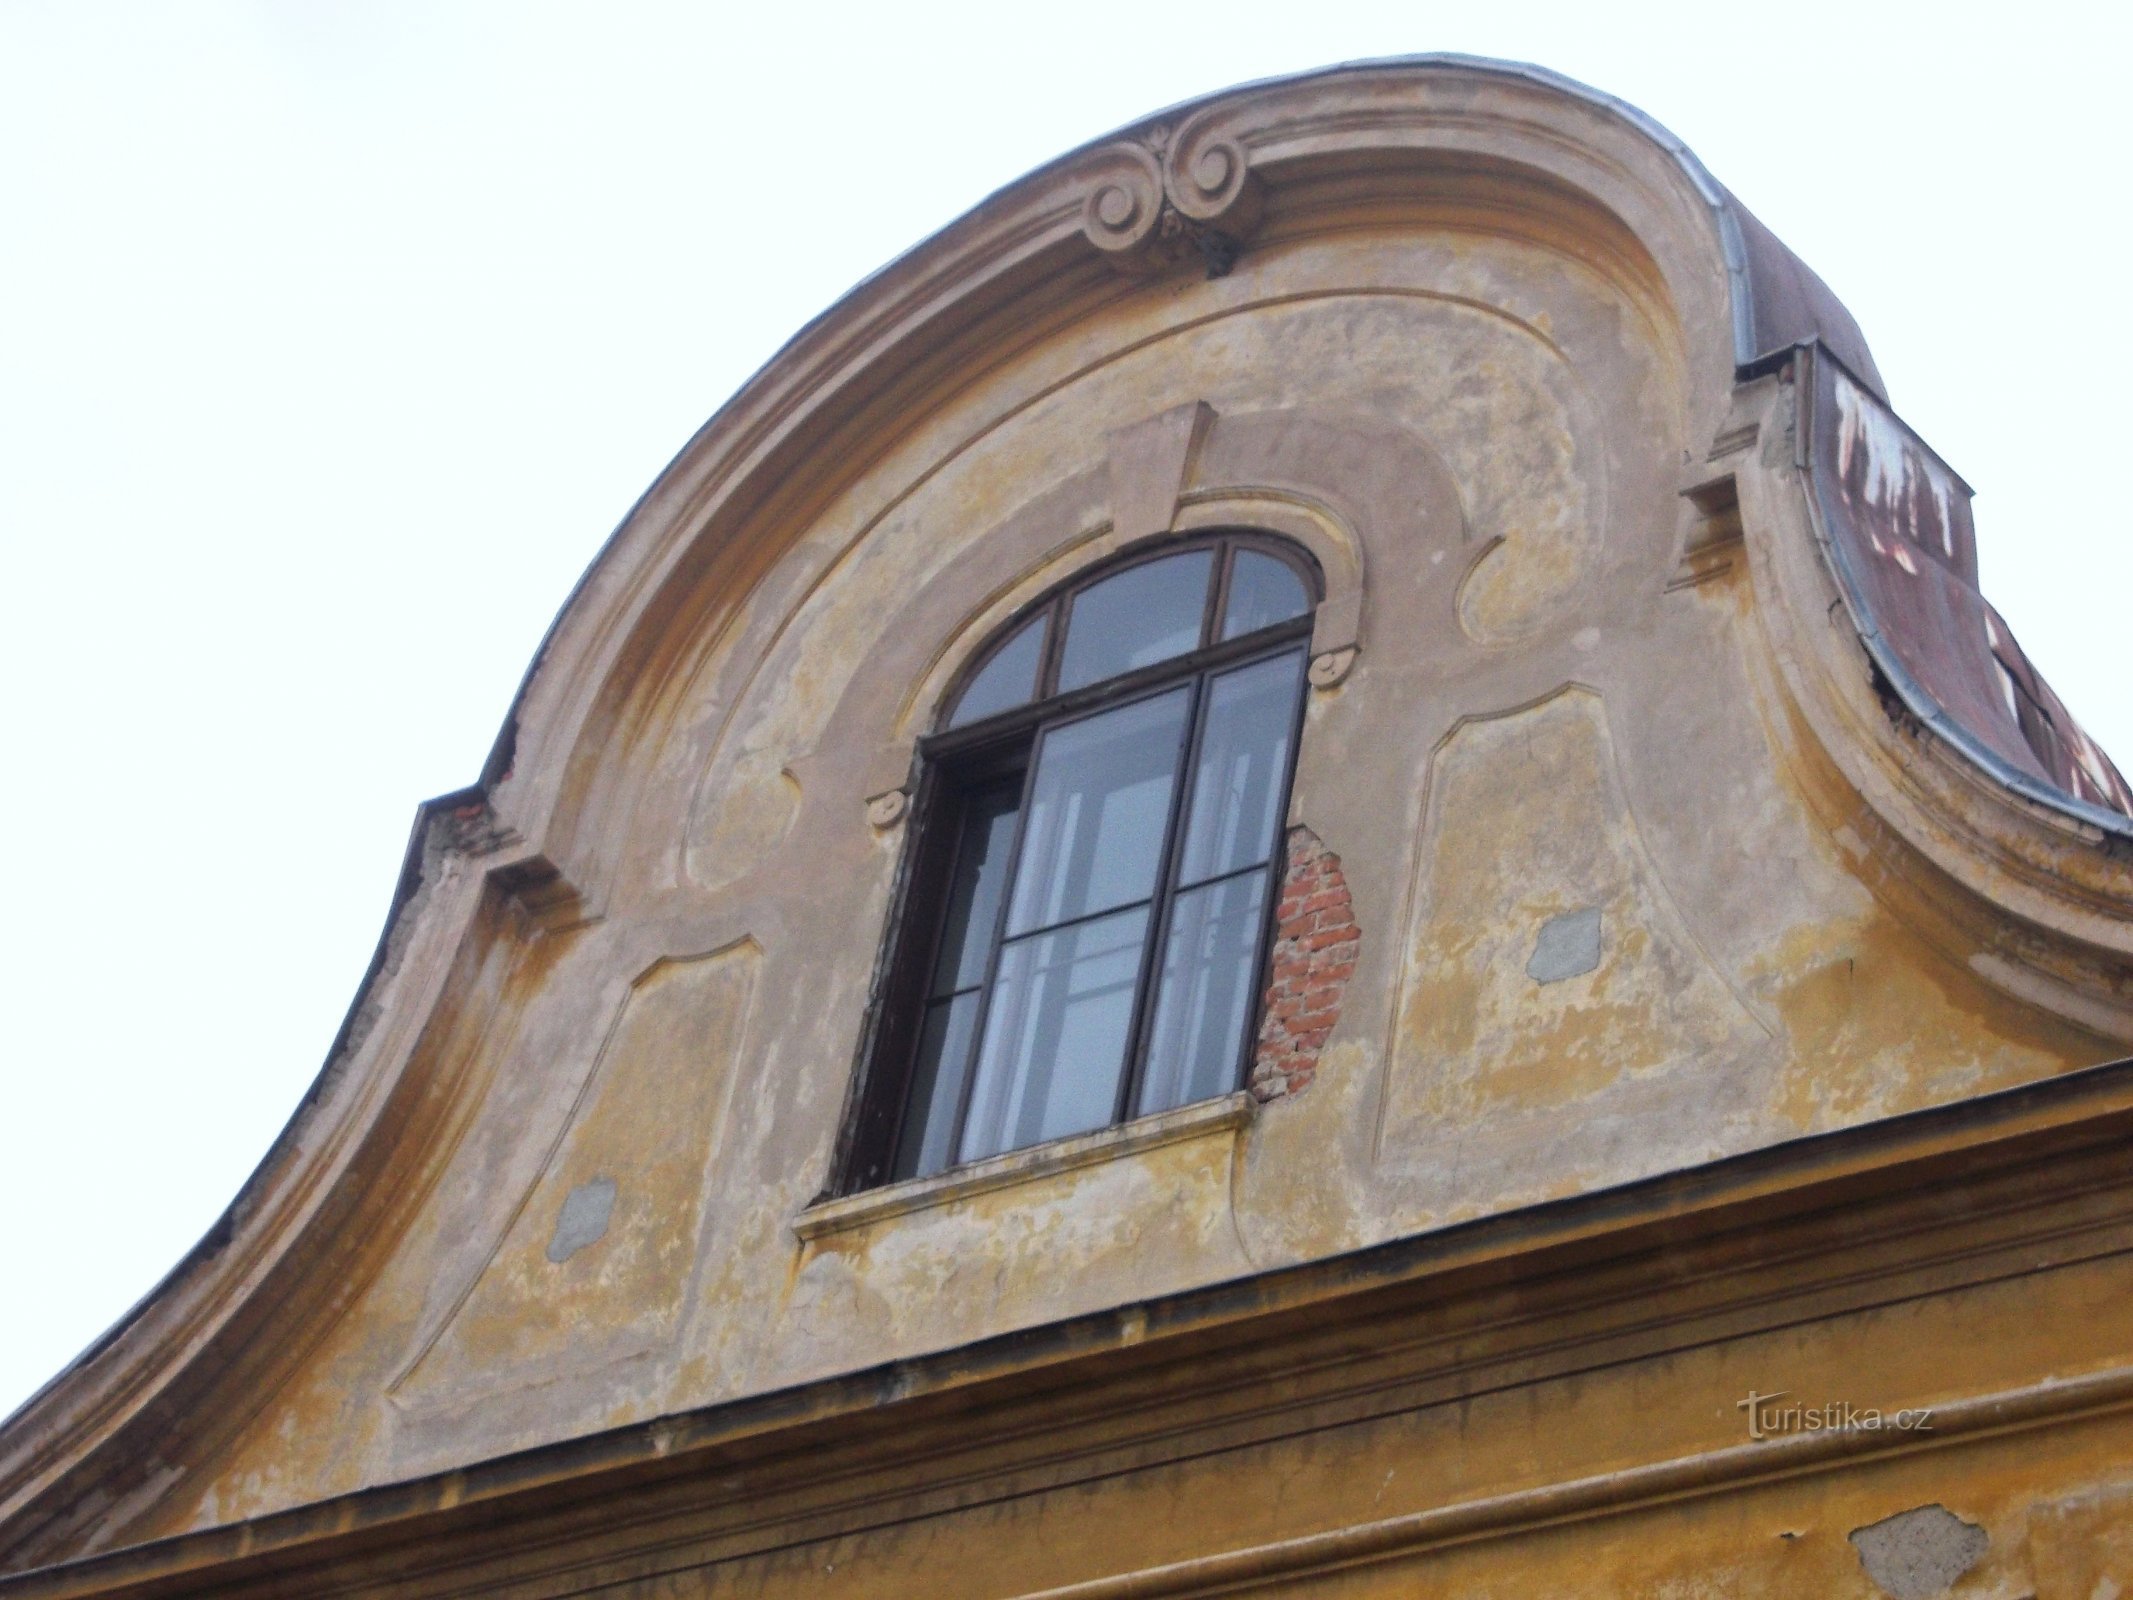 zgornji del fasade